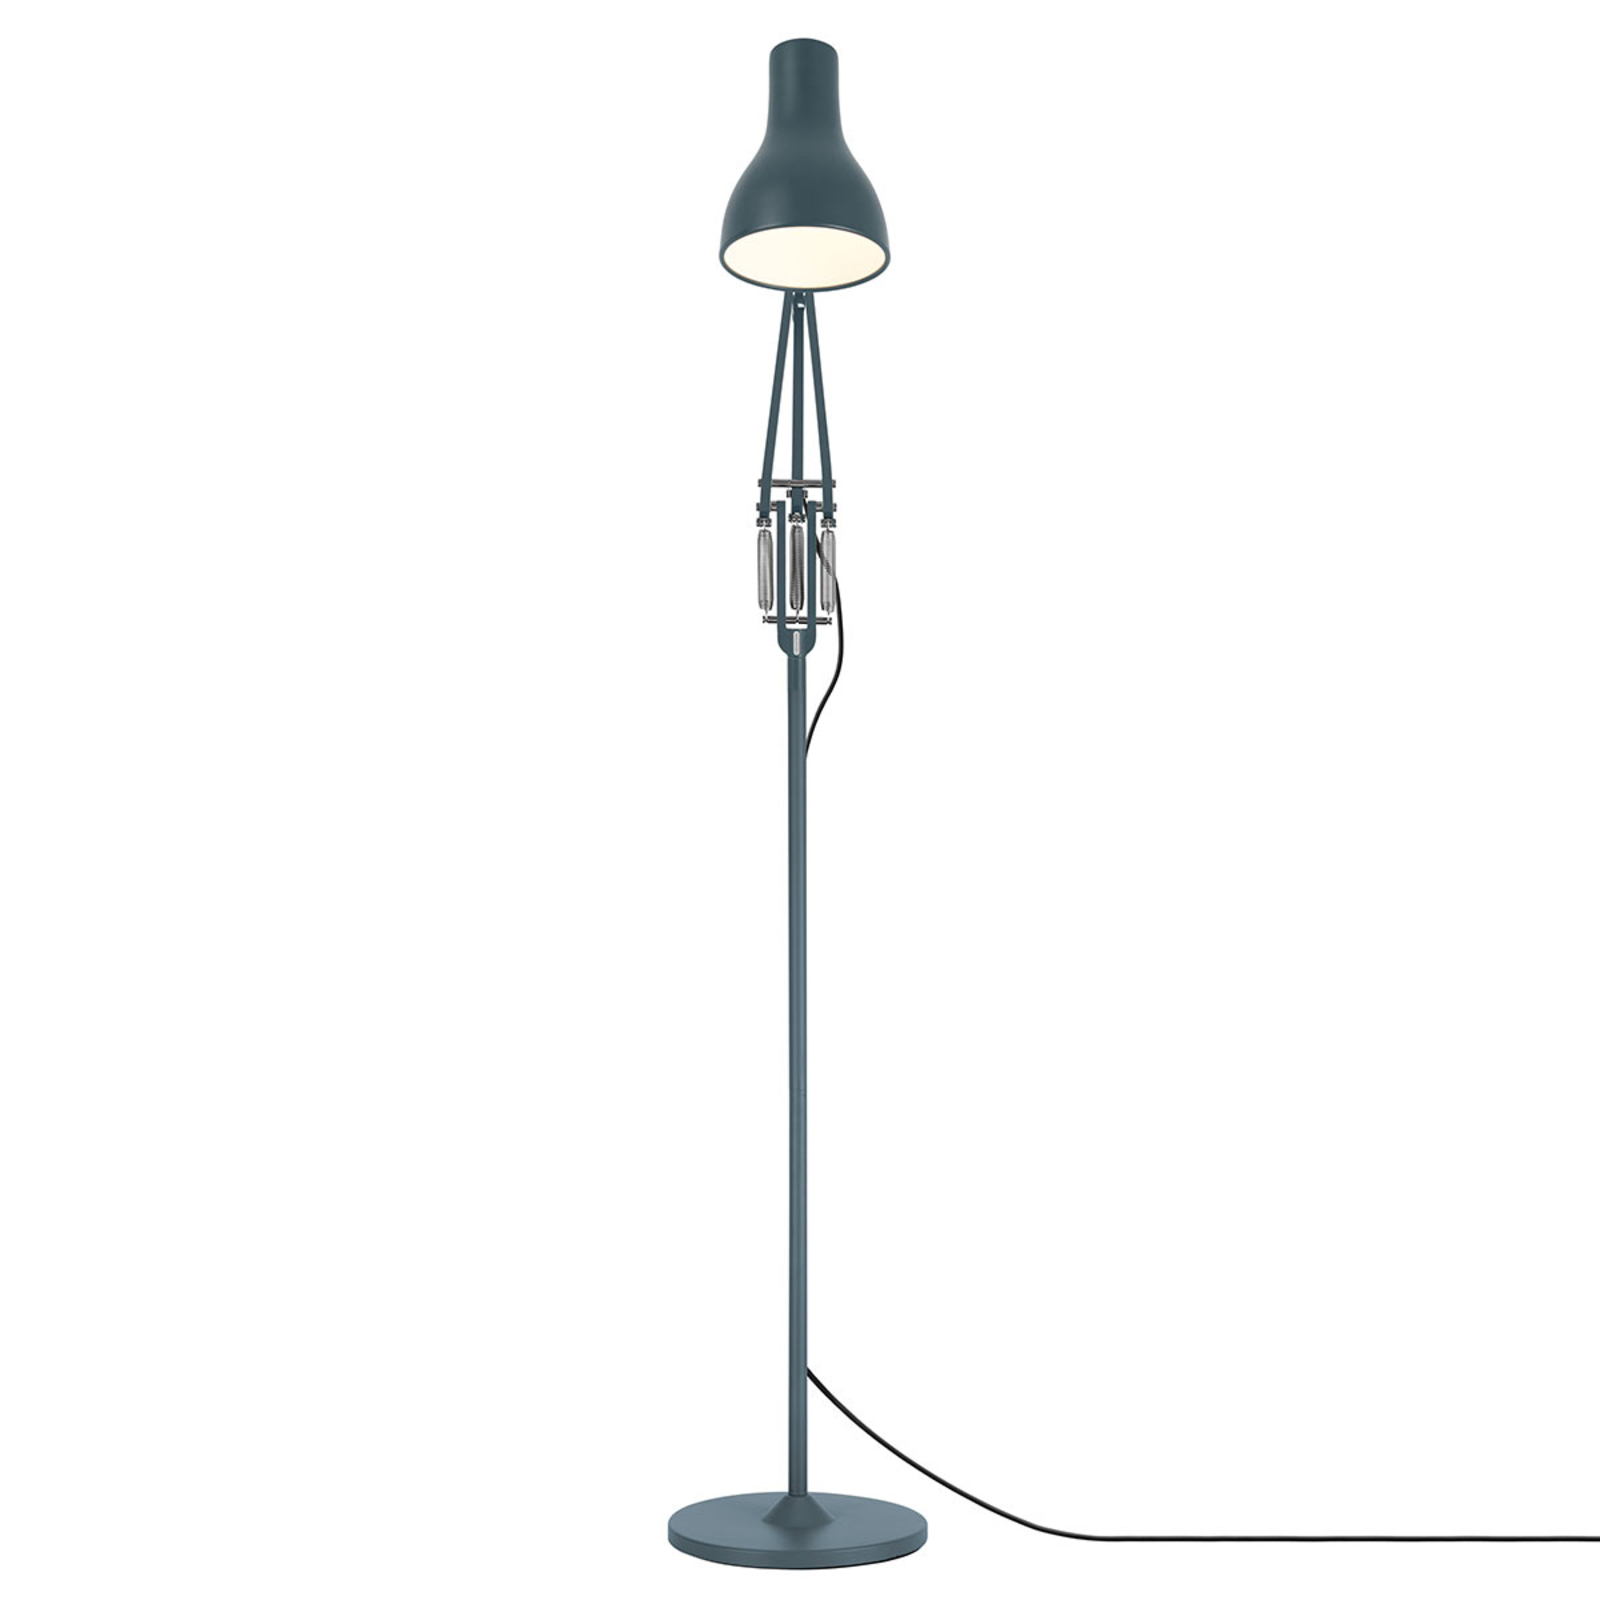 Anglepoise Type 75 floor lamp slate grey